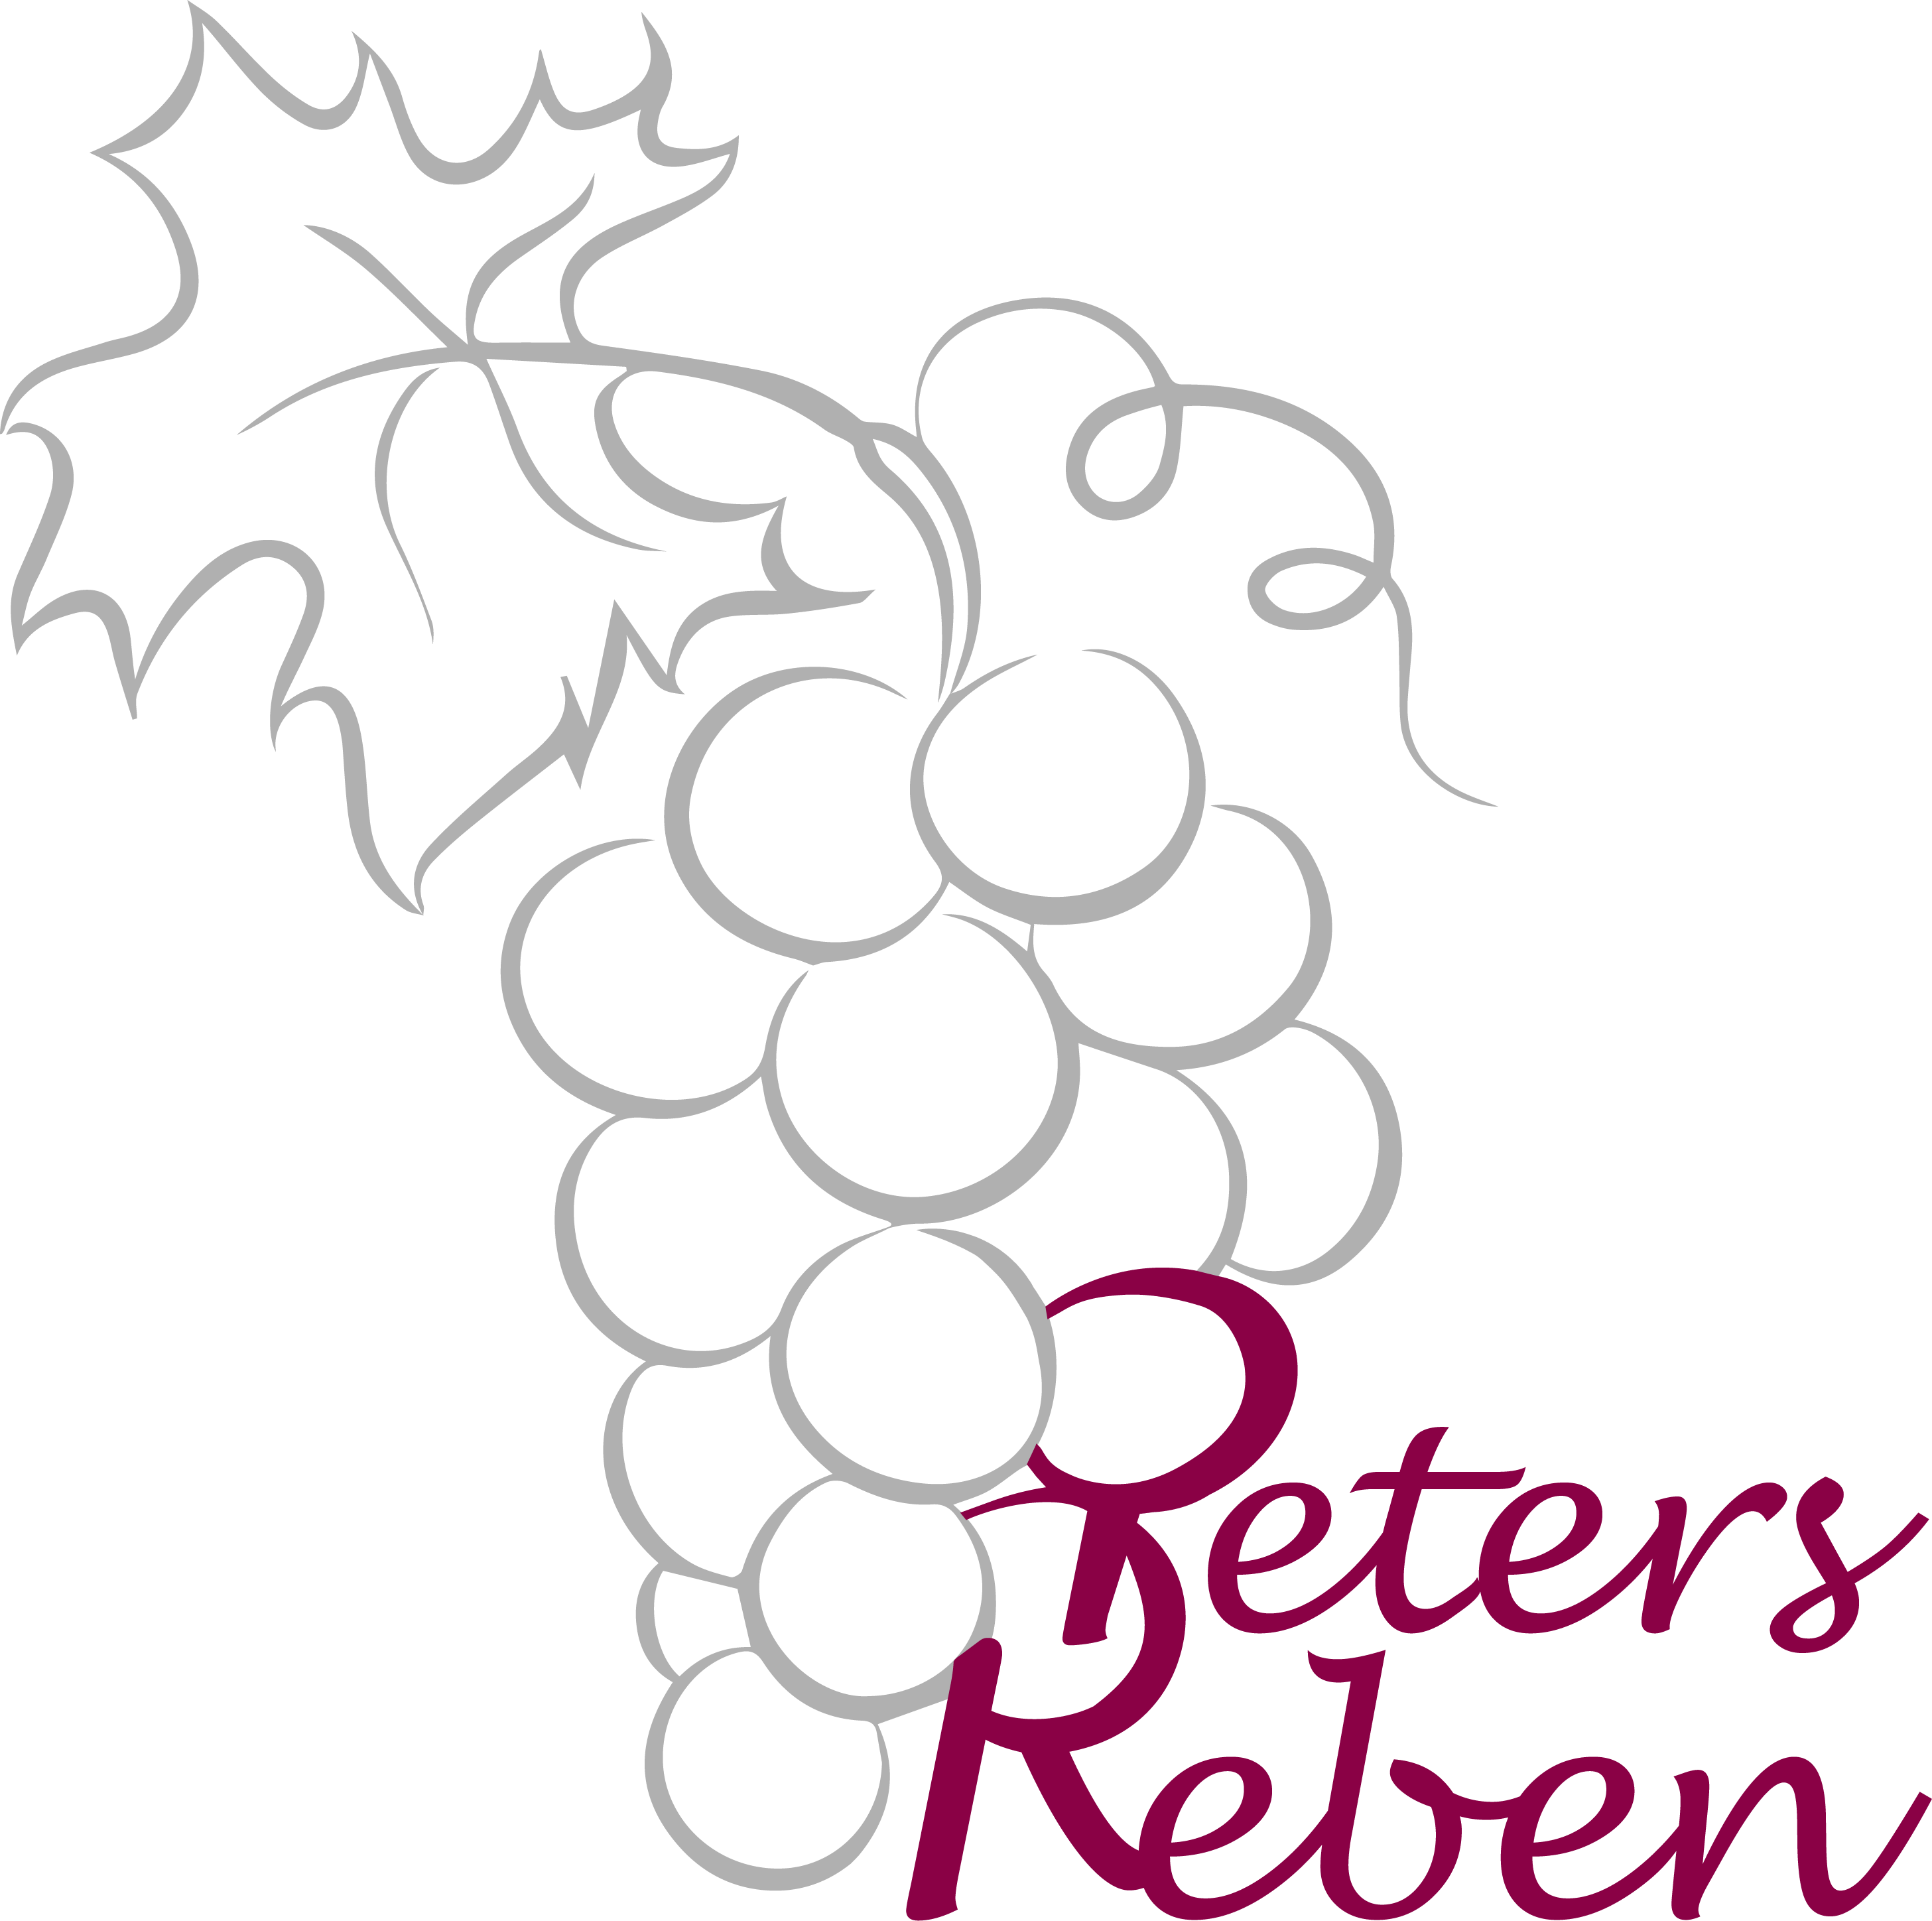 Peter's Reben